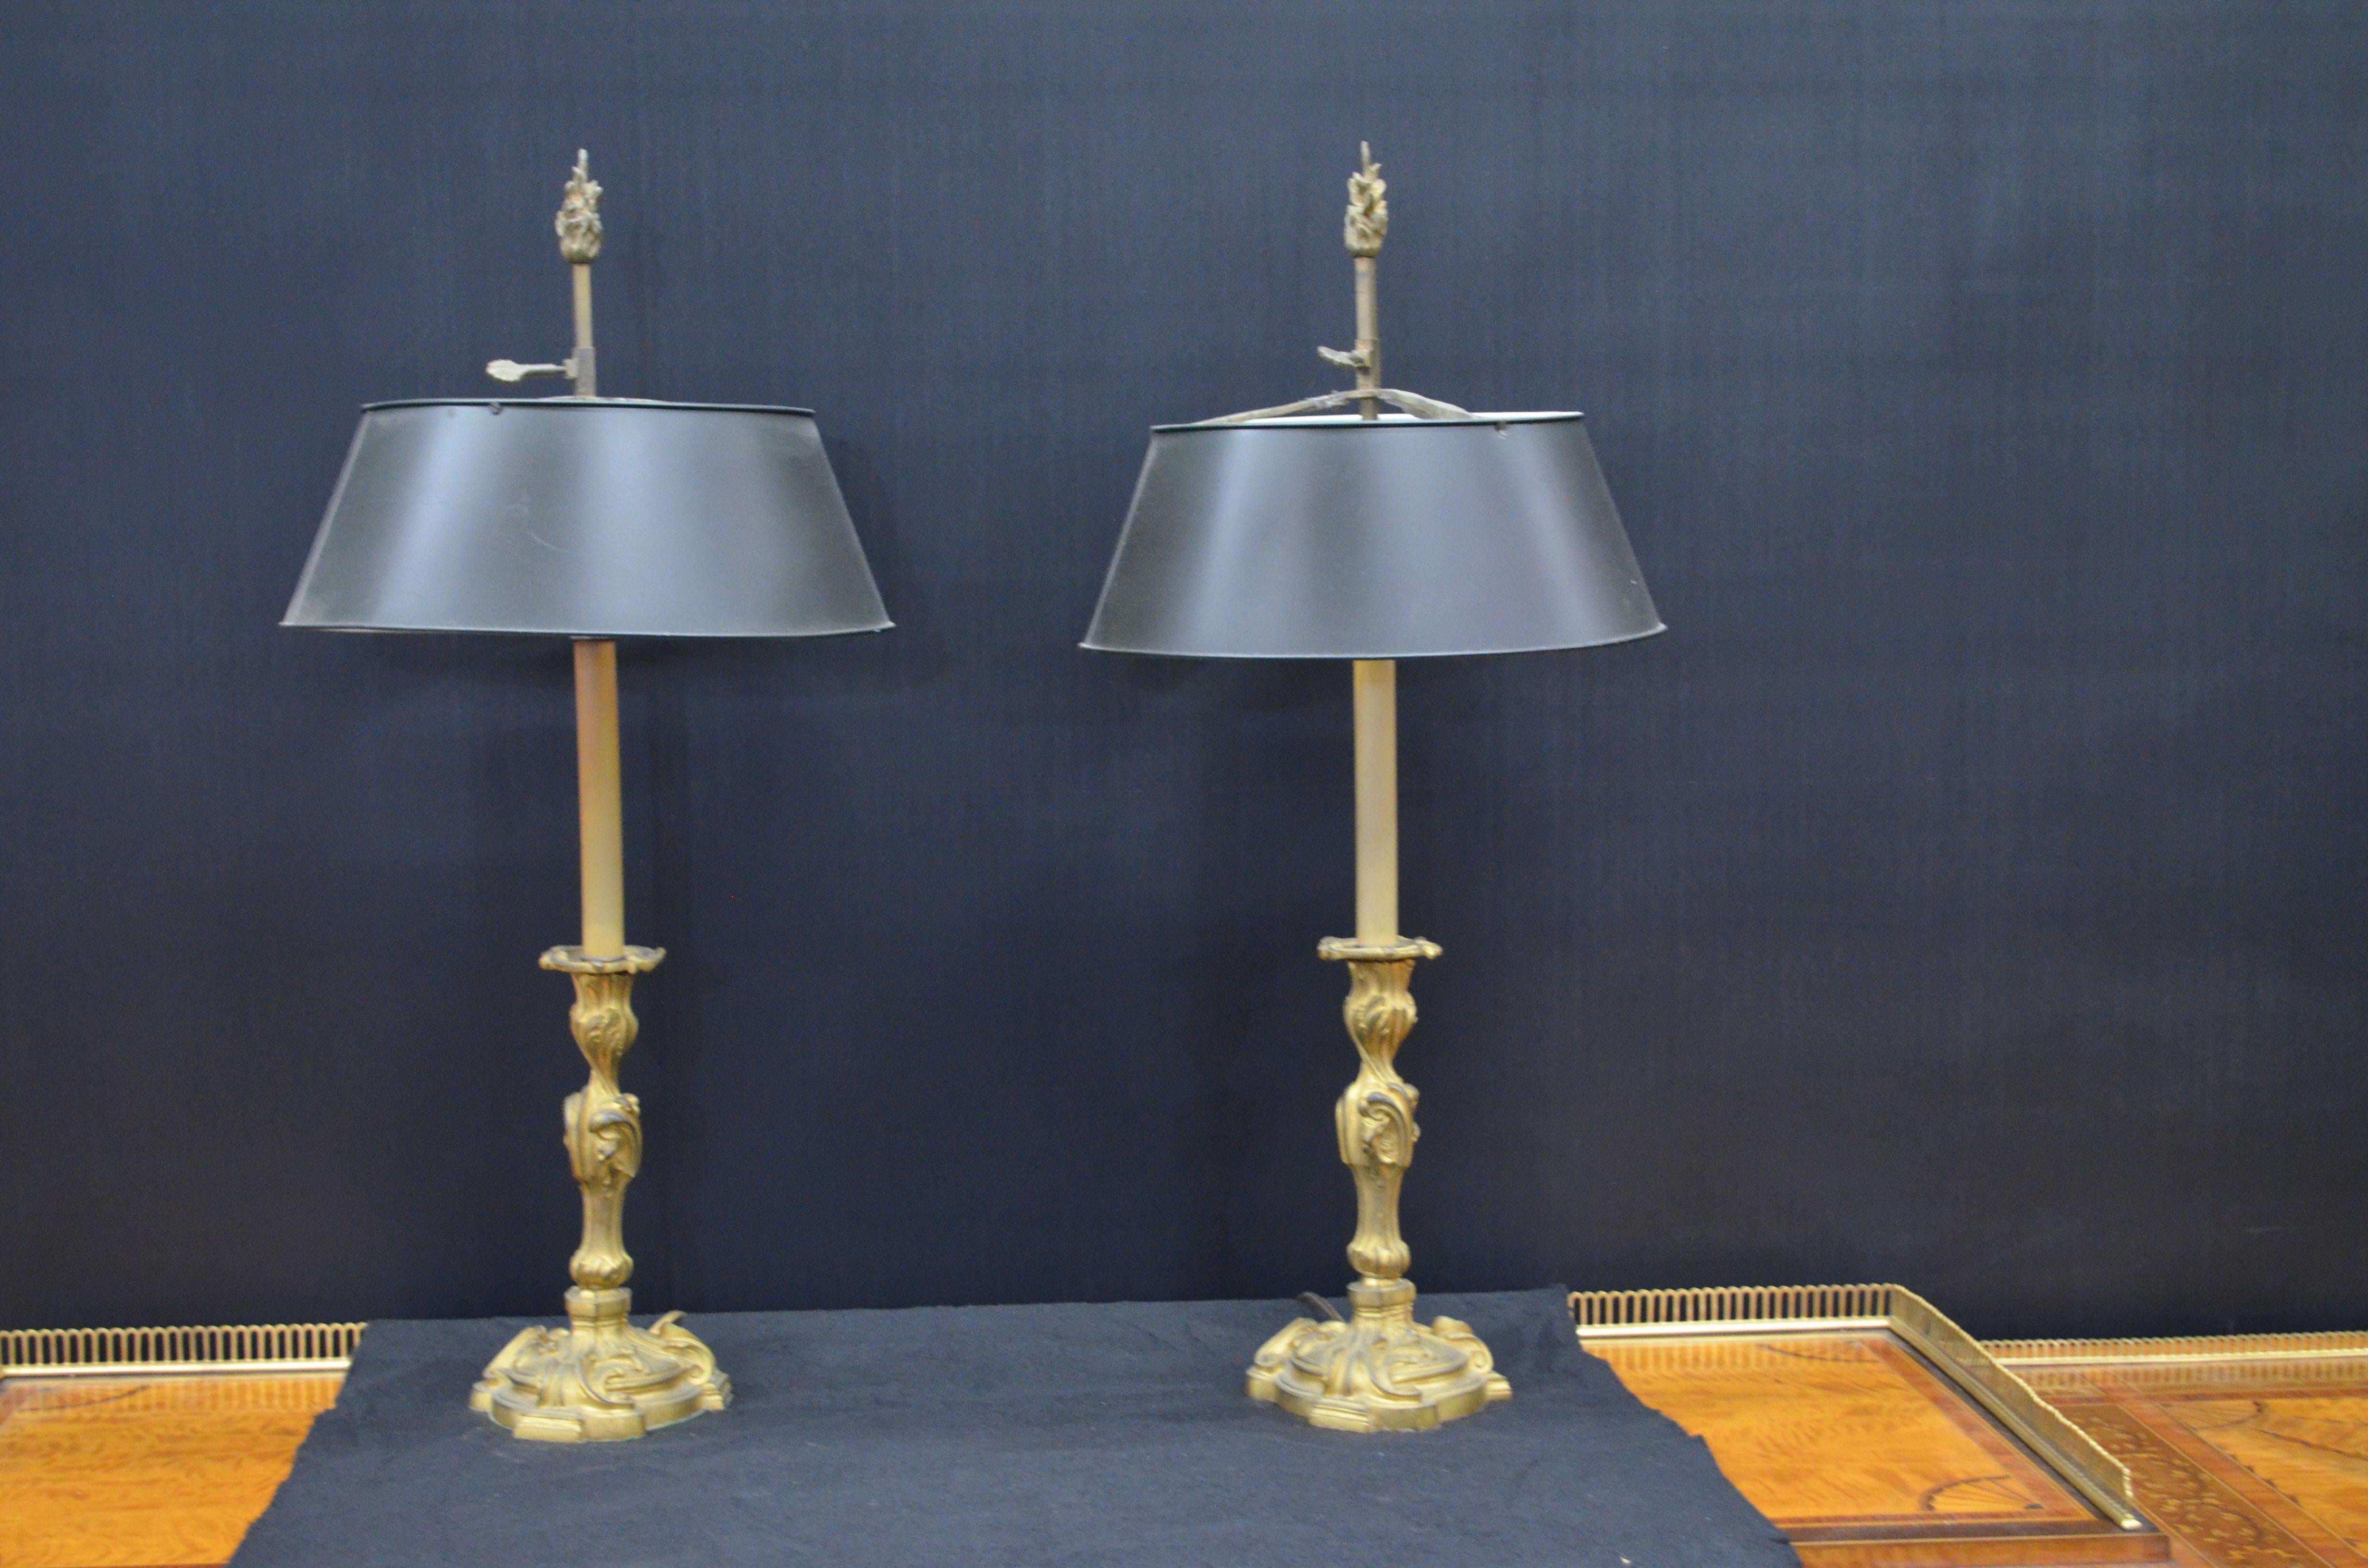 Regal Paar Französisch Louis XV Bronze Dore' Kerzenständer montiert als Lampen mit schwarz lackierten Tole Bouillotte Schirme. Die französischen Kerzenleuchter aus vergoldeter Bronze im Louis XV-Stil haben einen blattförmigen, dreifach gewellten,